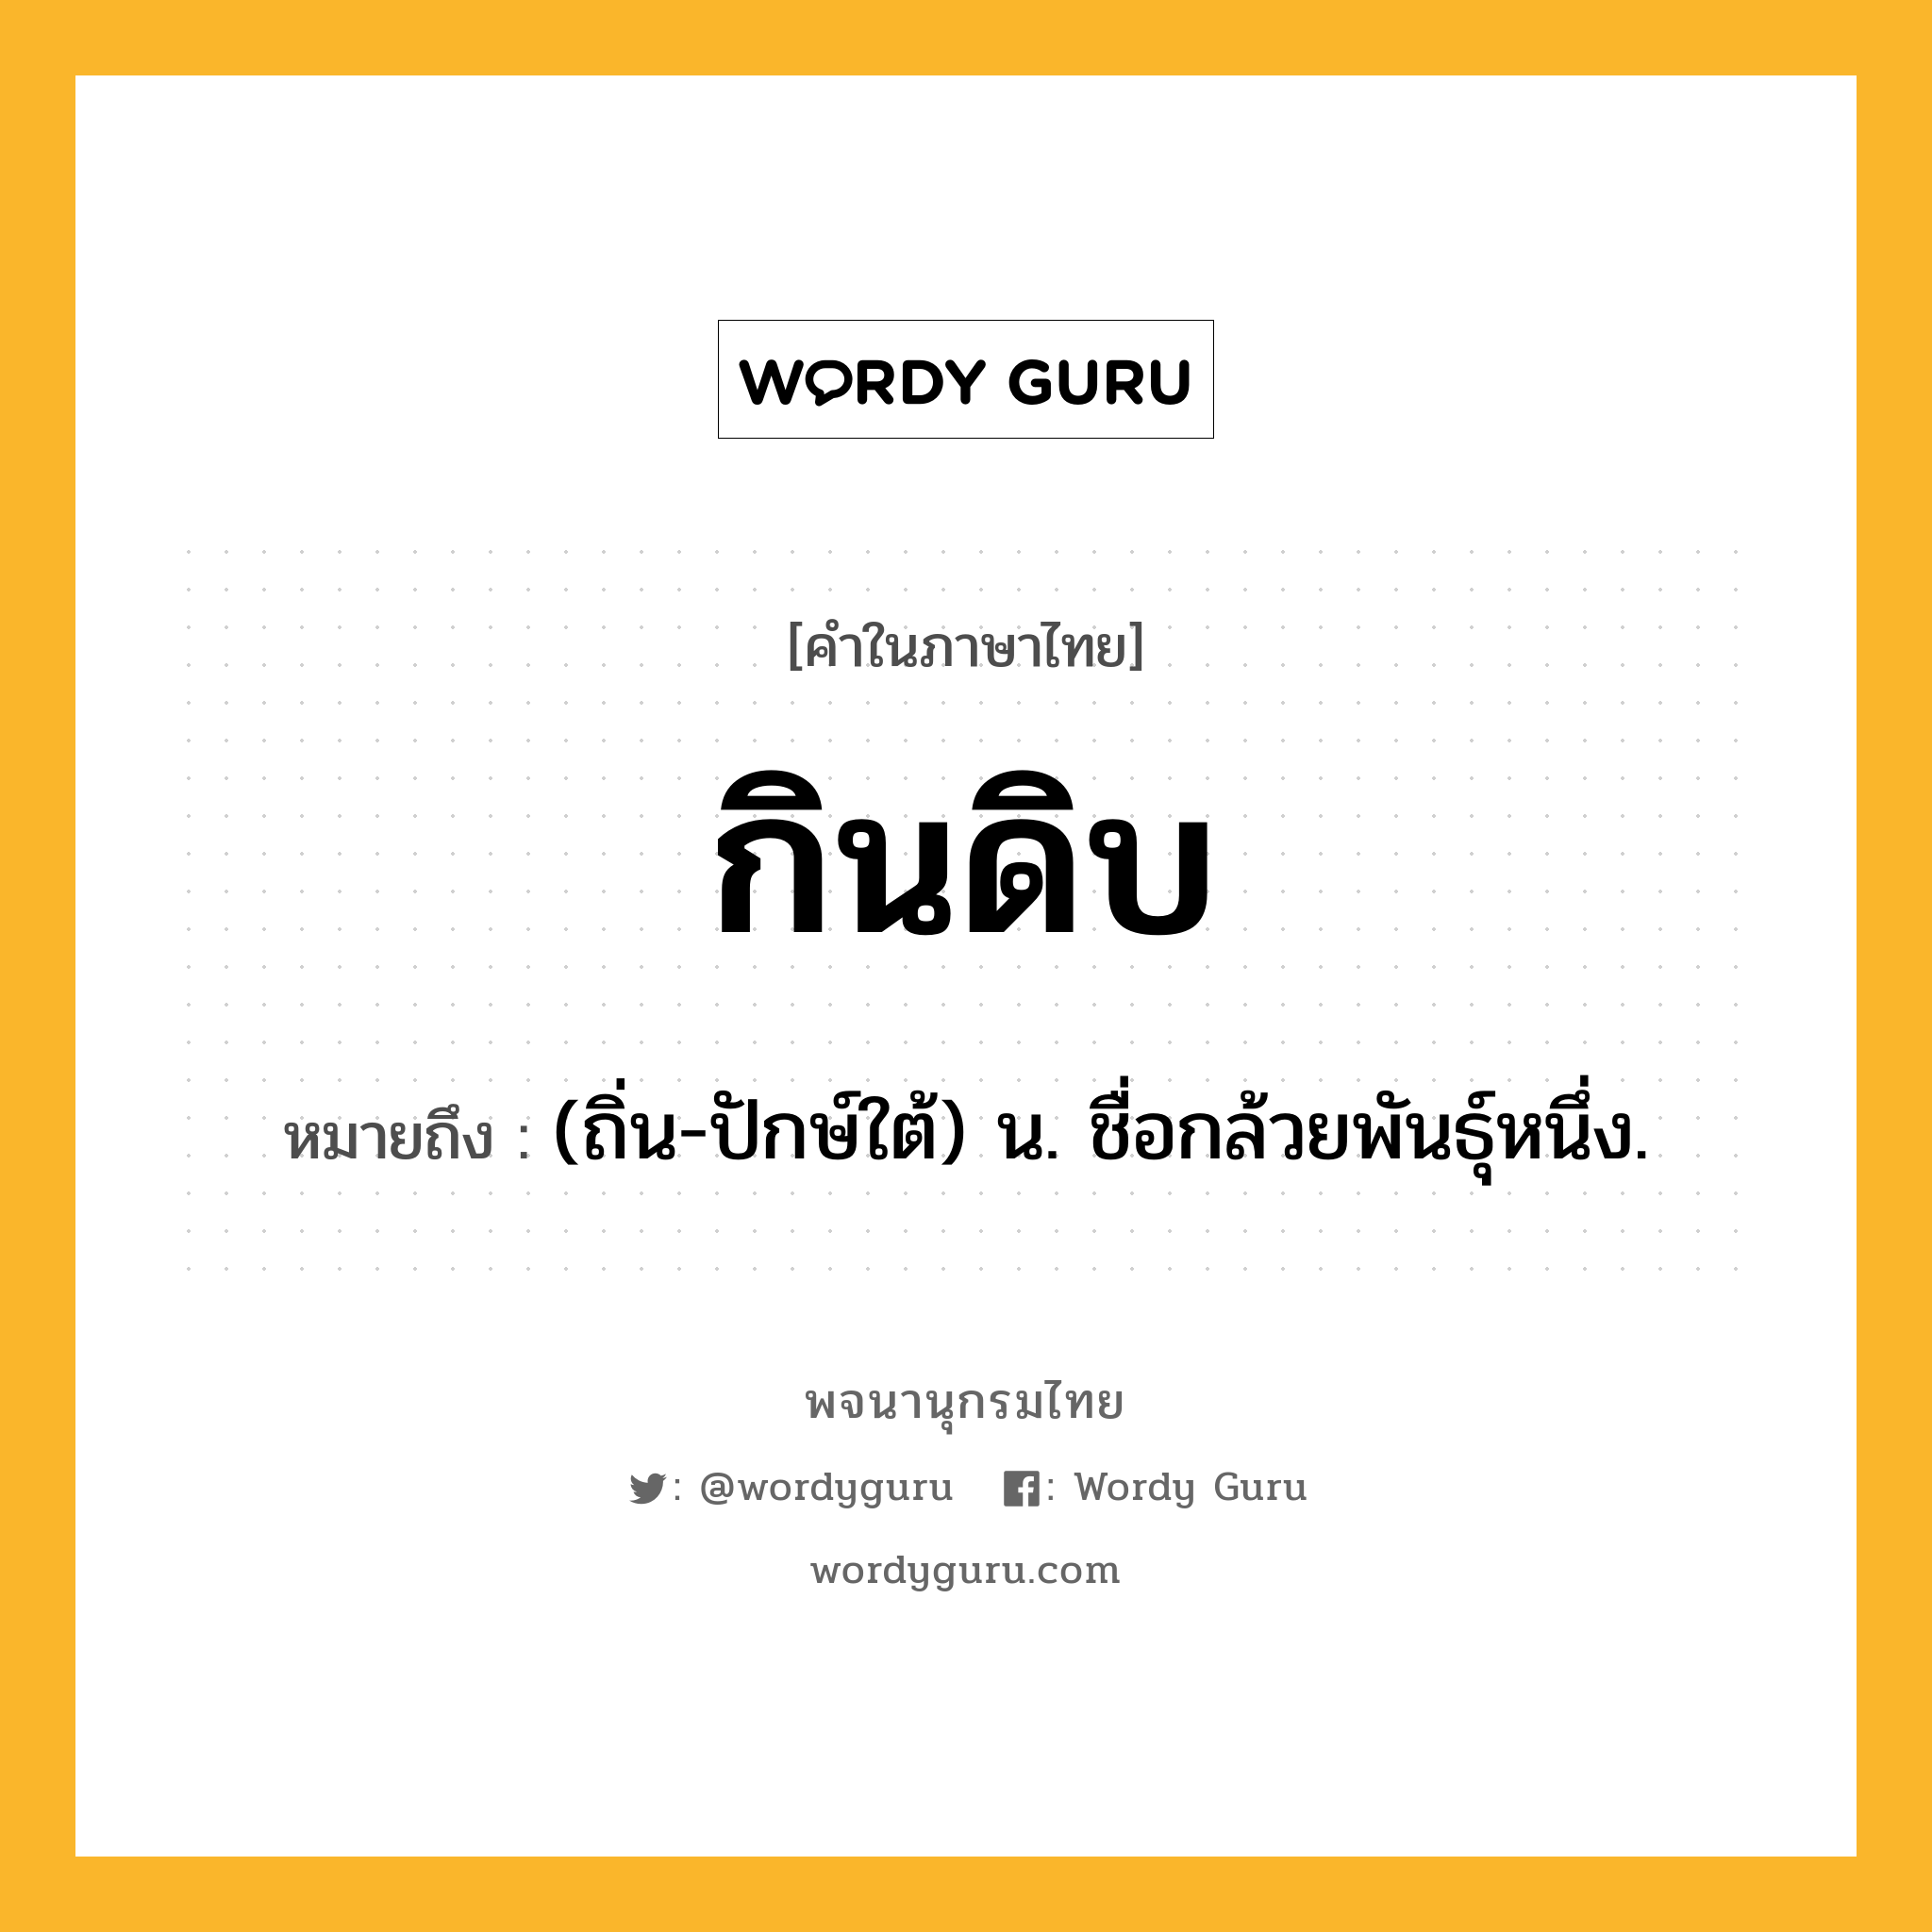 กินดิบ ความหมาย หมายถึงอะไร?, คำในภาษาไทย กินดิบ หมายถึง (ถิ่น-ปักษ์ใต้) น. ชื่อกล้วยพันธุ์หนึ่ง.